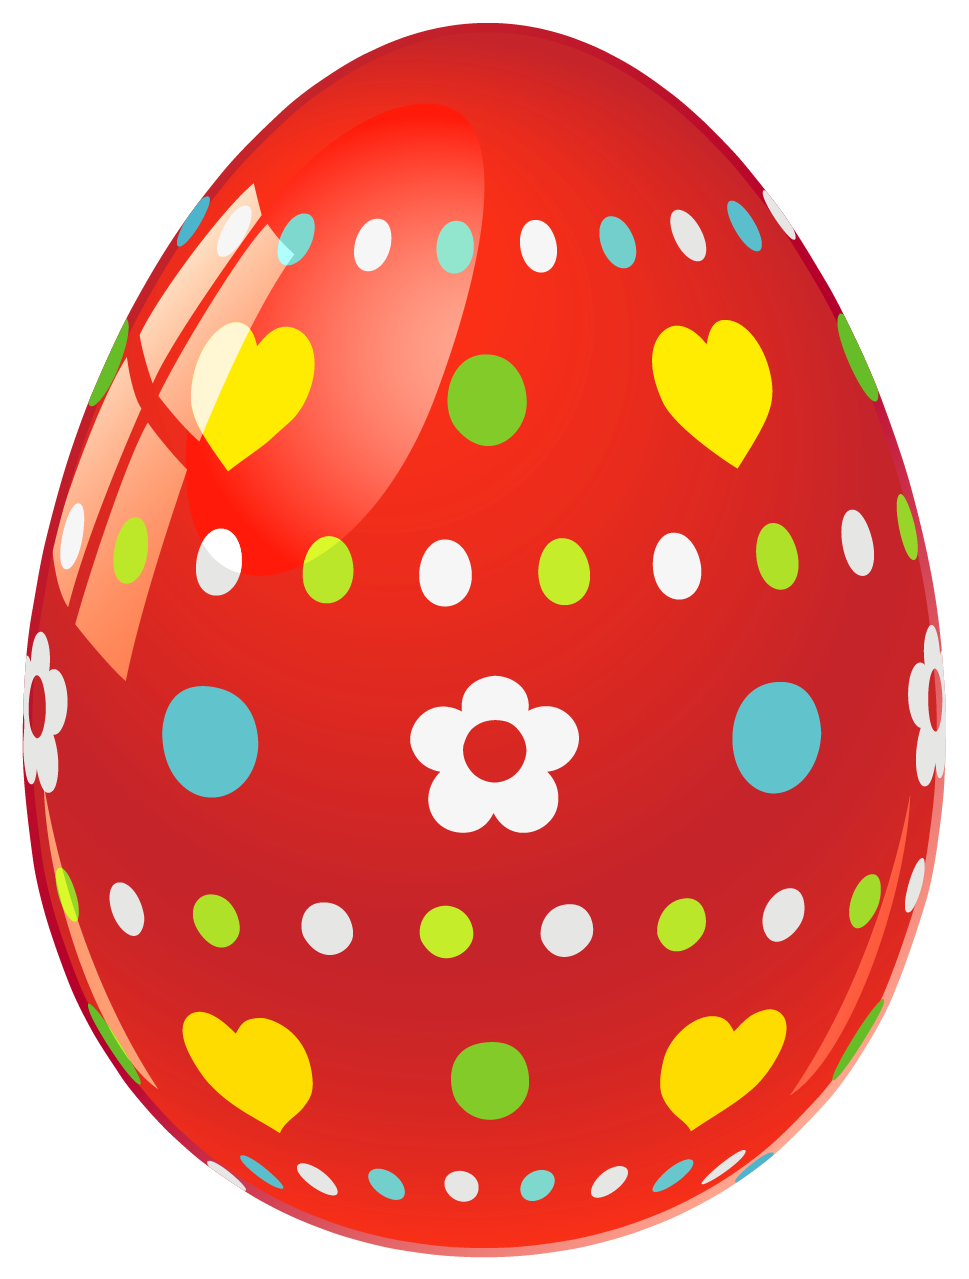 Images of Easter Egg - Jefney